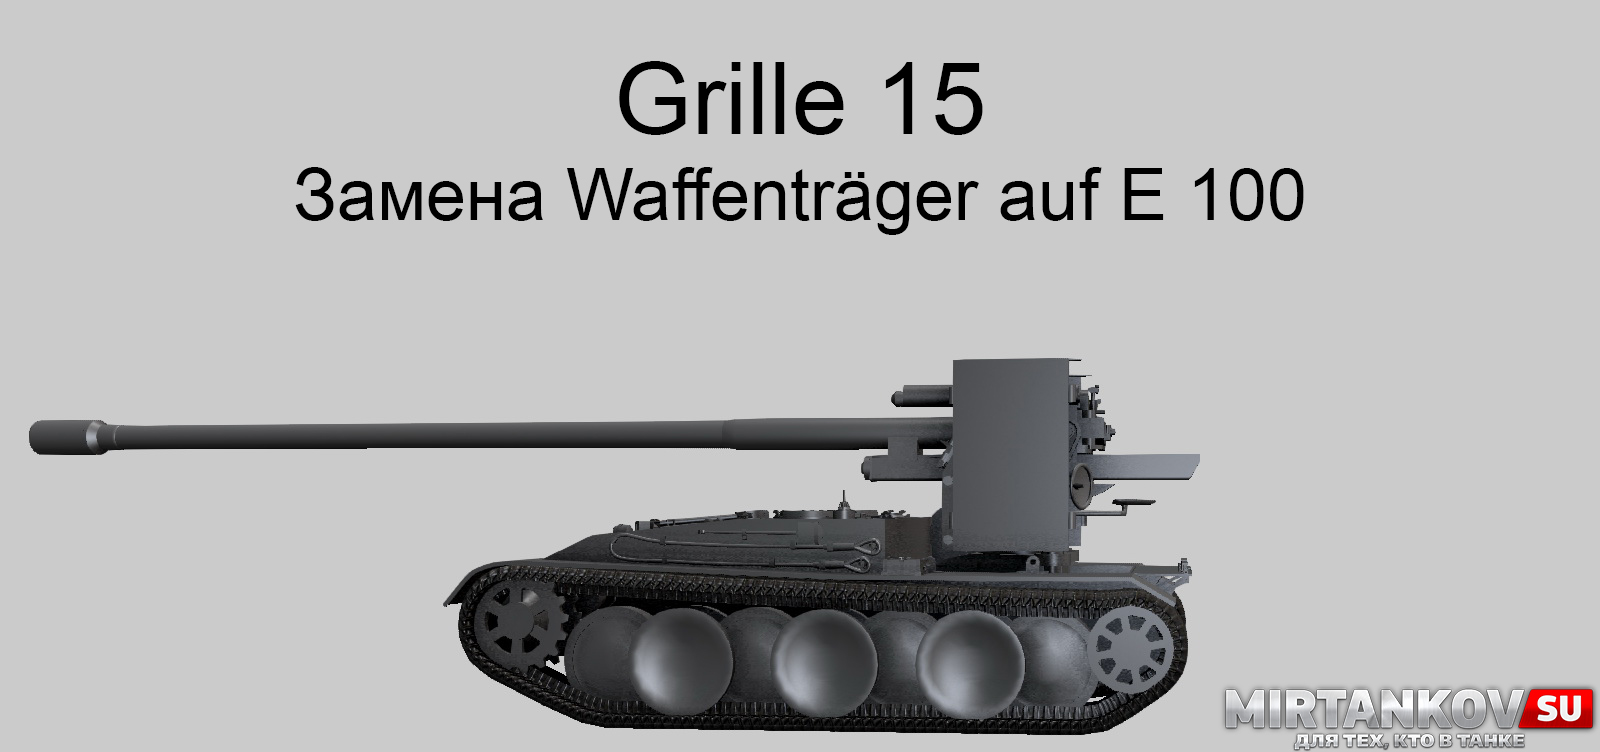 Характеристики Grille 15 - замены Waffenträger auf E 100 в WoT